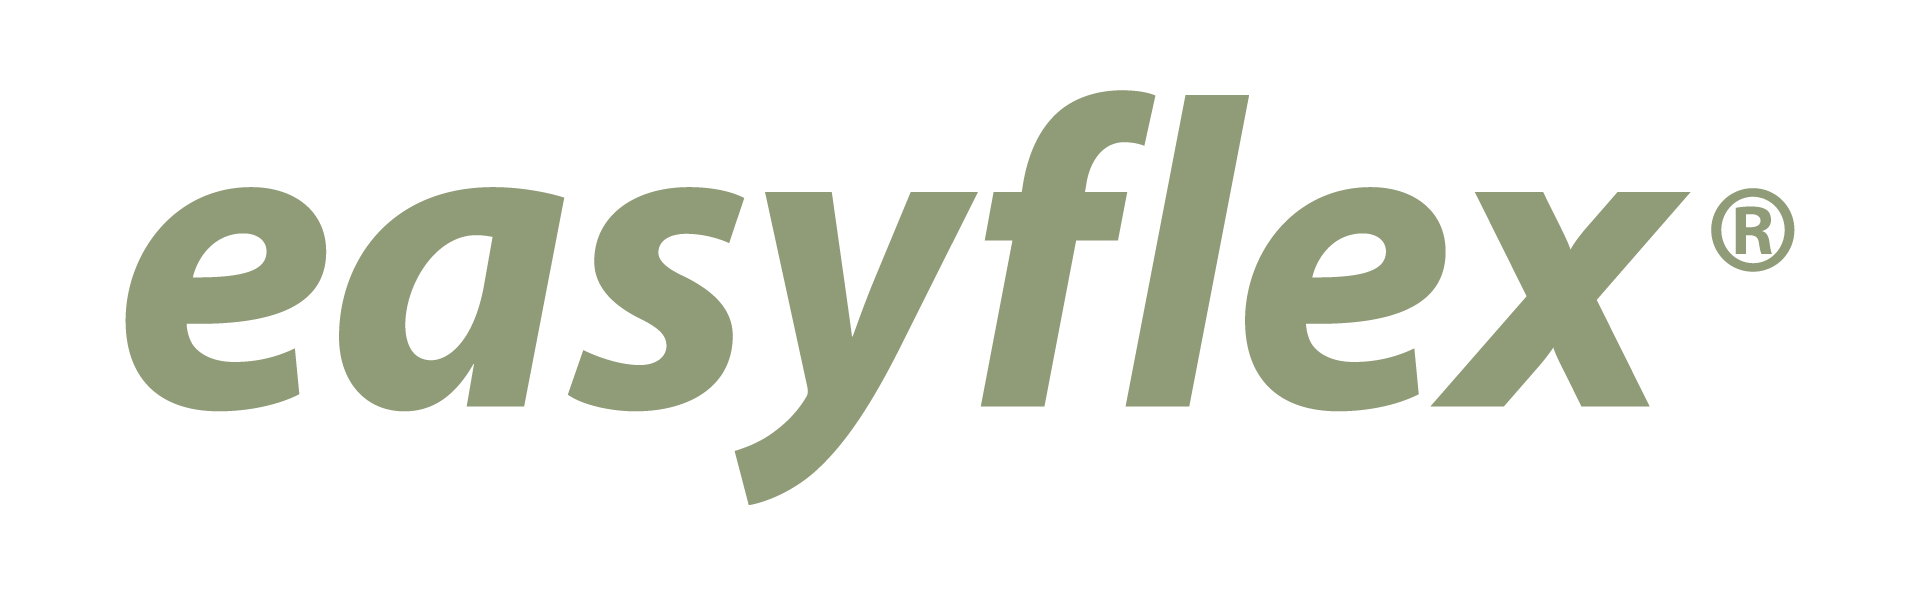 Easyflex logo